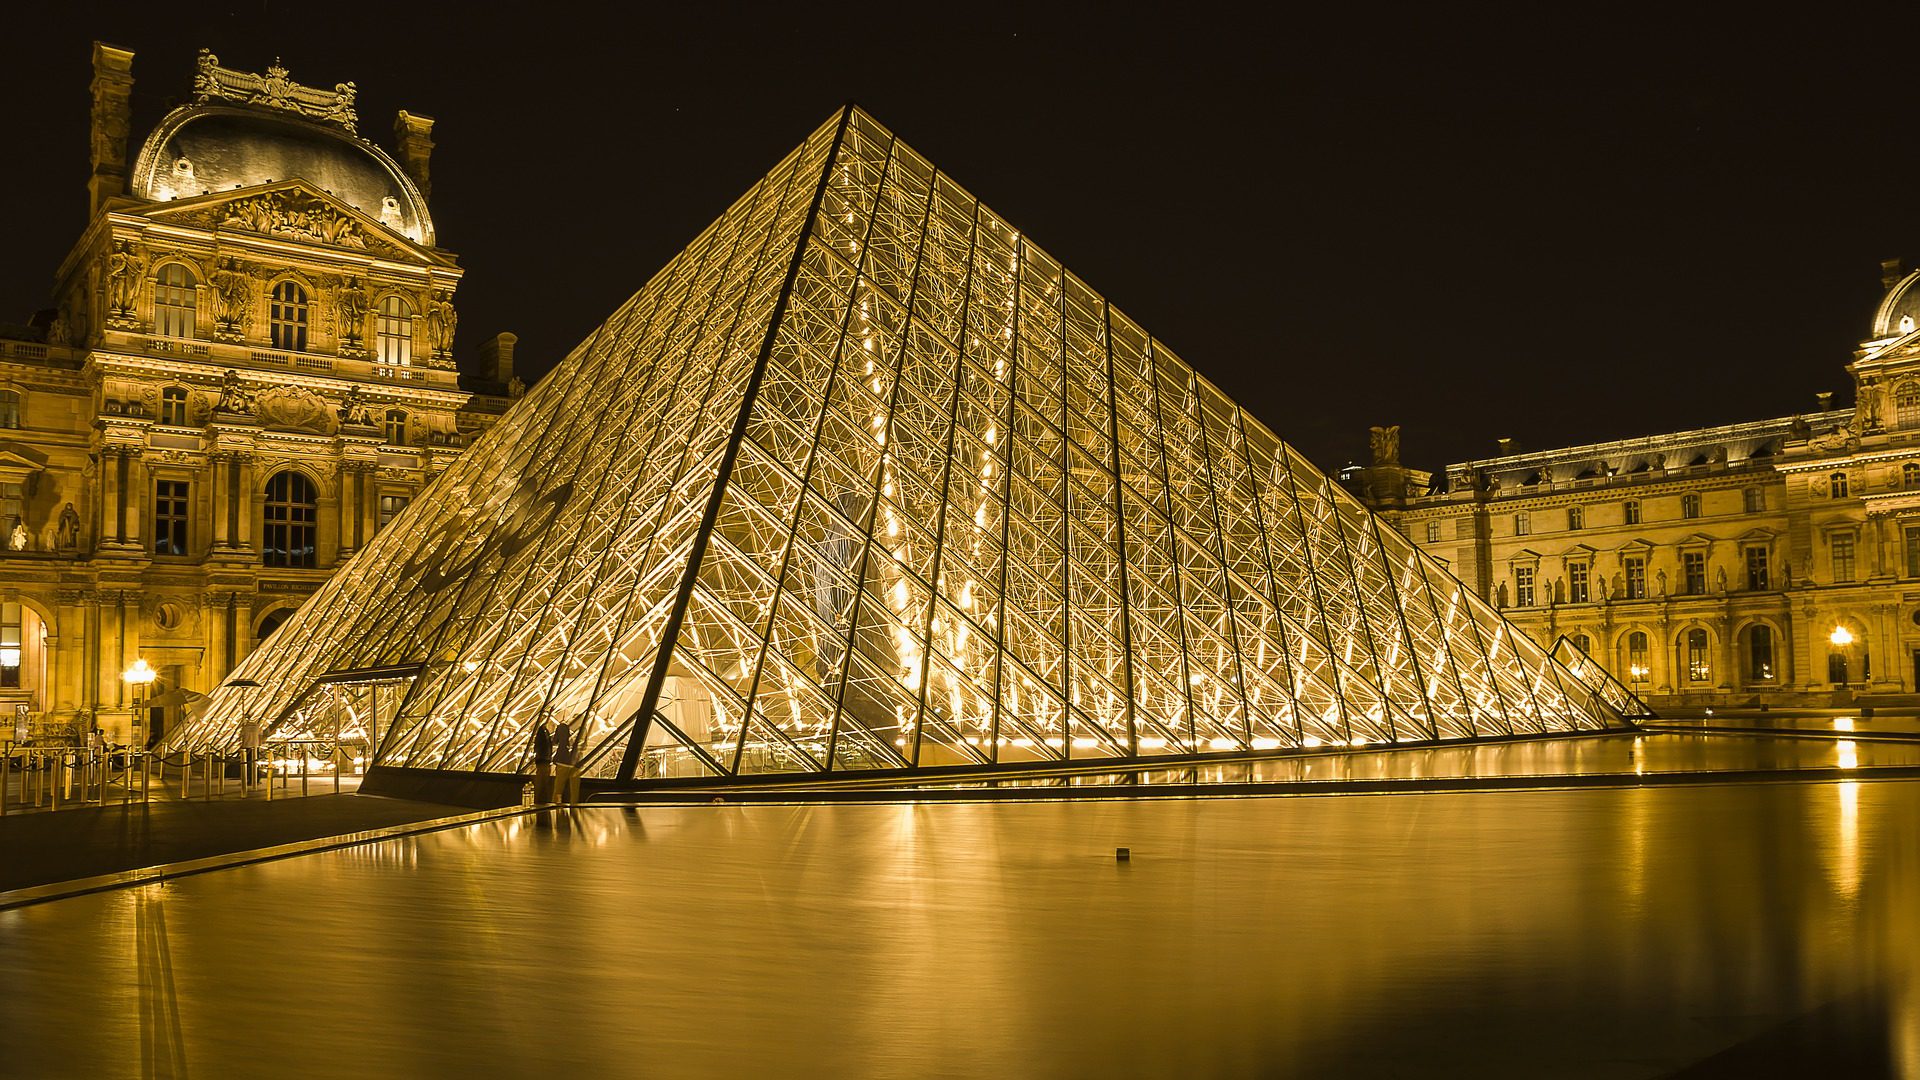 The Louvre Museum, Paris